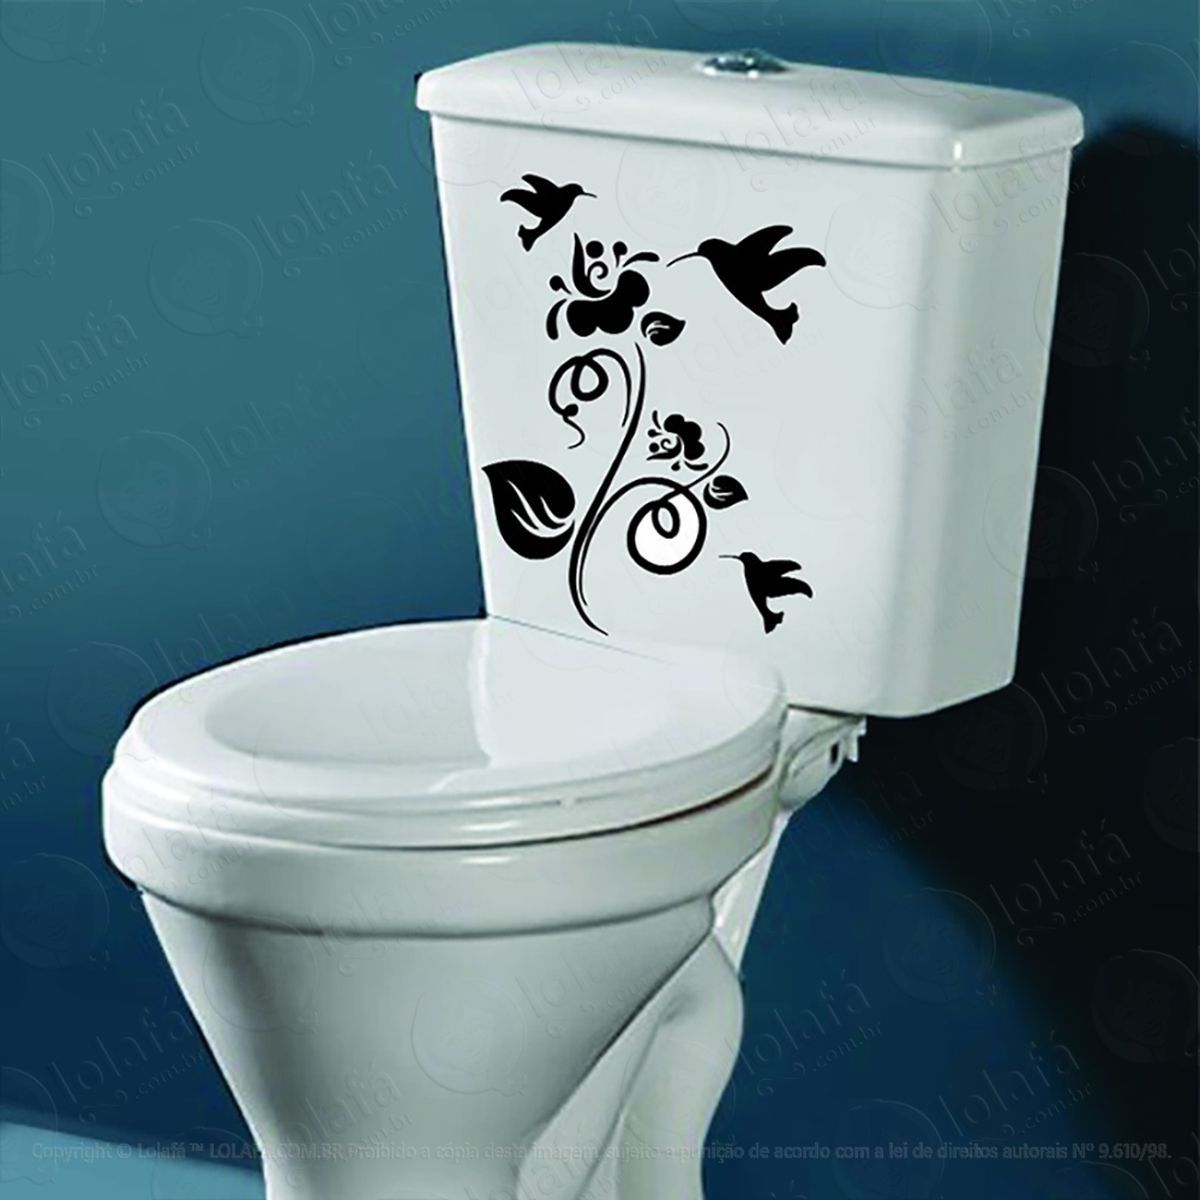 adesivo vaso sanitário caixa tampa floral passaros mod:218